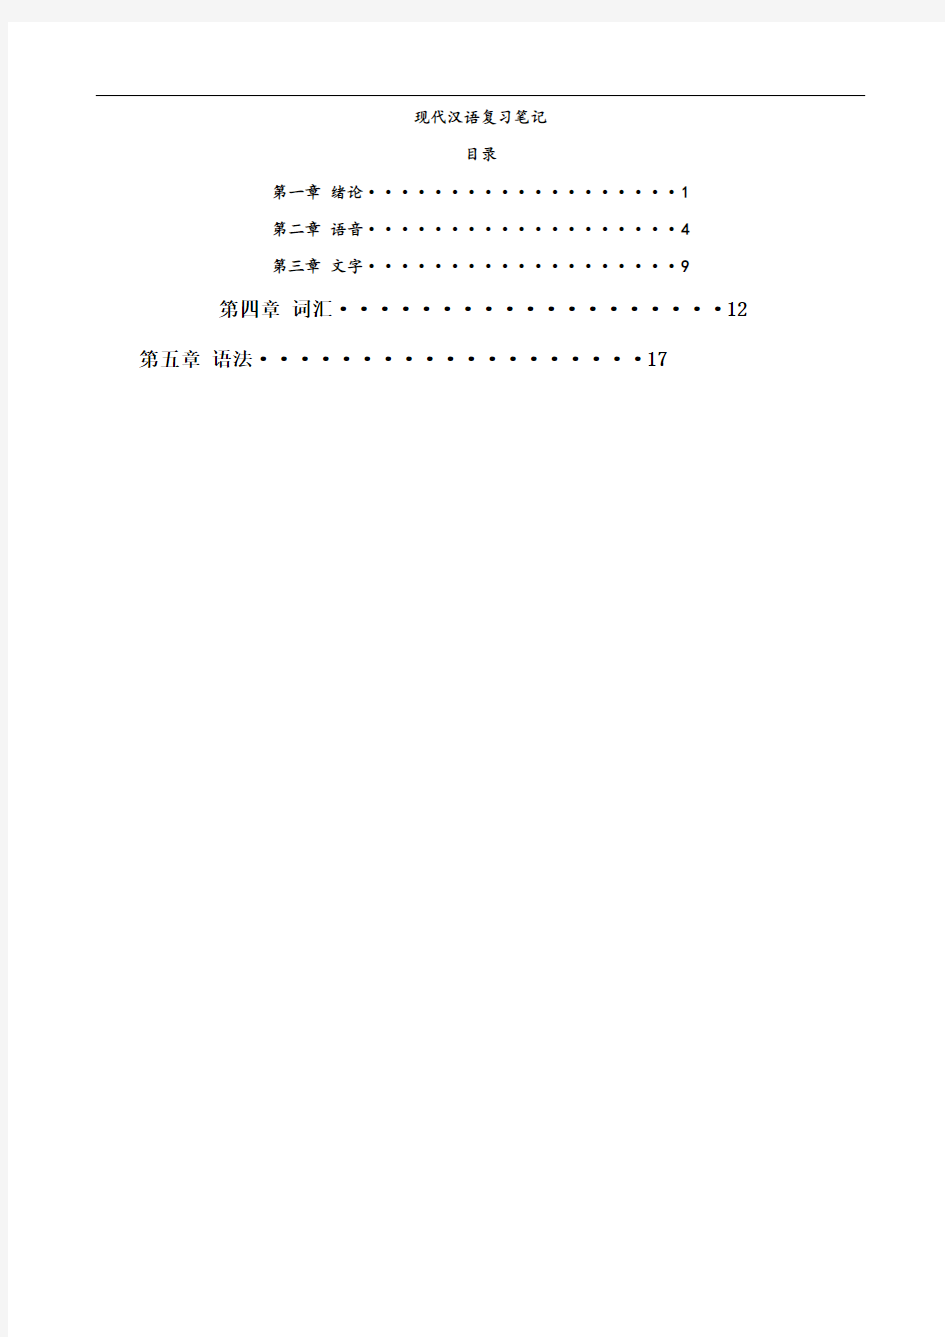 现代汉语复习笔记